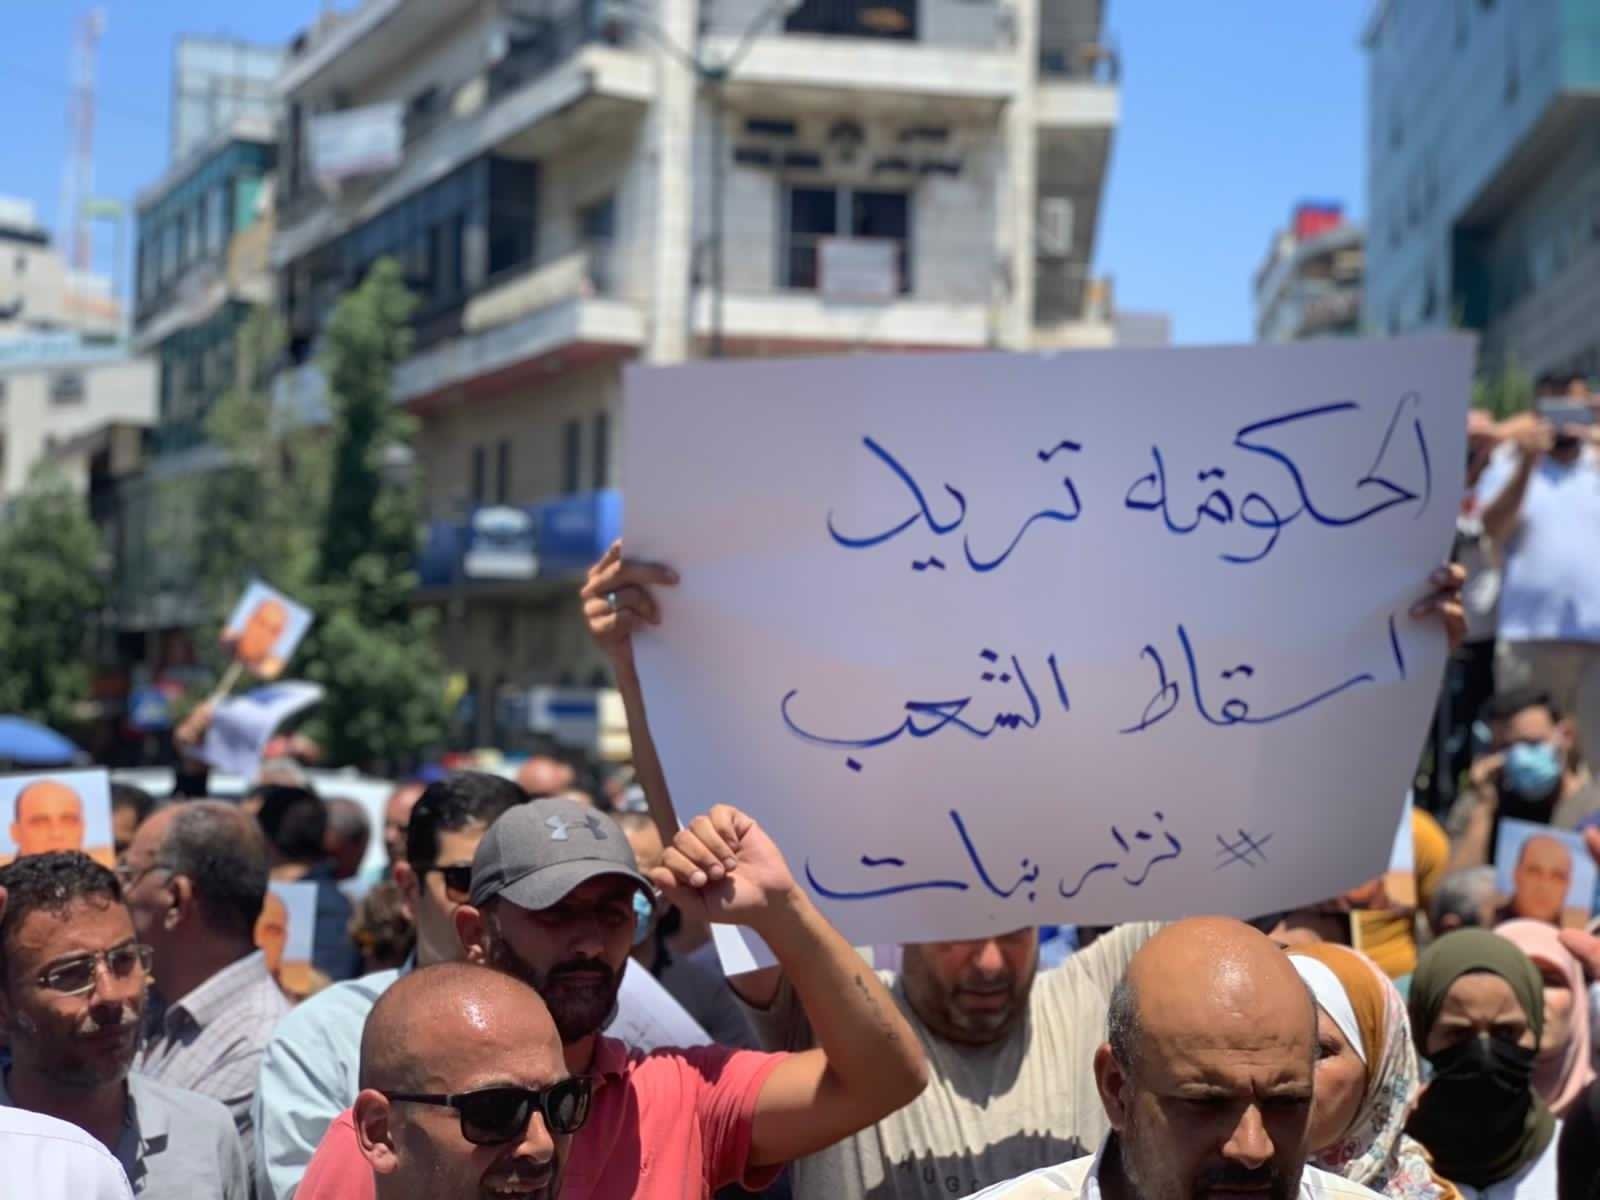 Un manifestant à Ramallah tient une pancarte sur laquelle on peut lire « Le régime veut la chute du peuple », le 24 juin 2021, après la mort de Nizar Banat (MEE/Shatha Hammad)